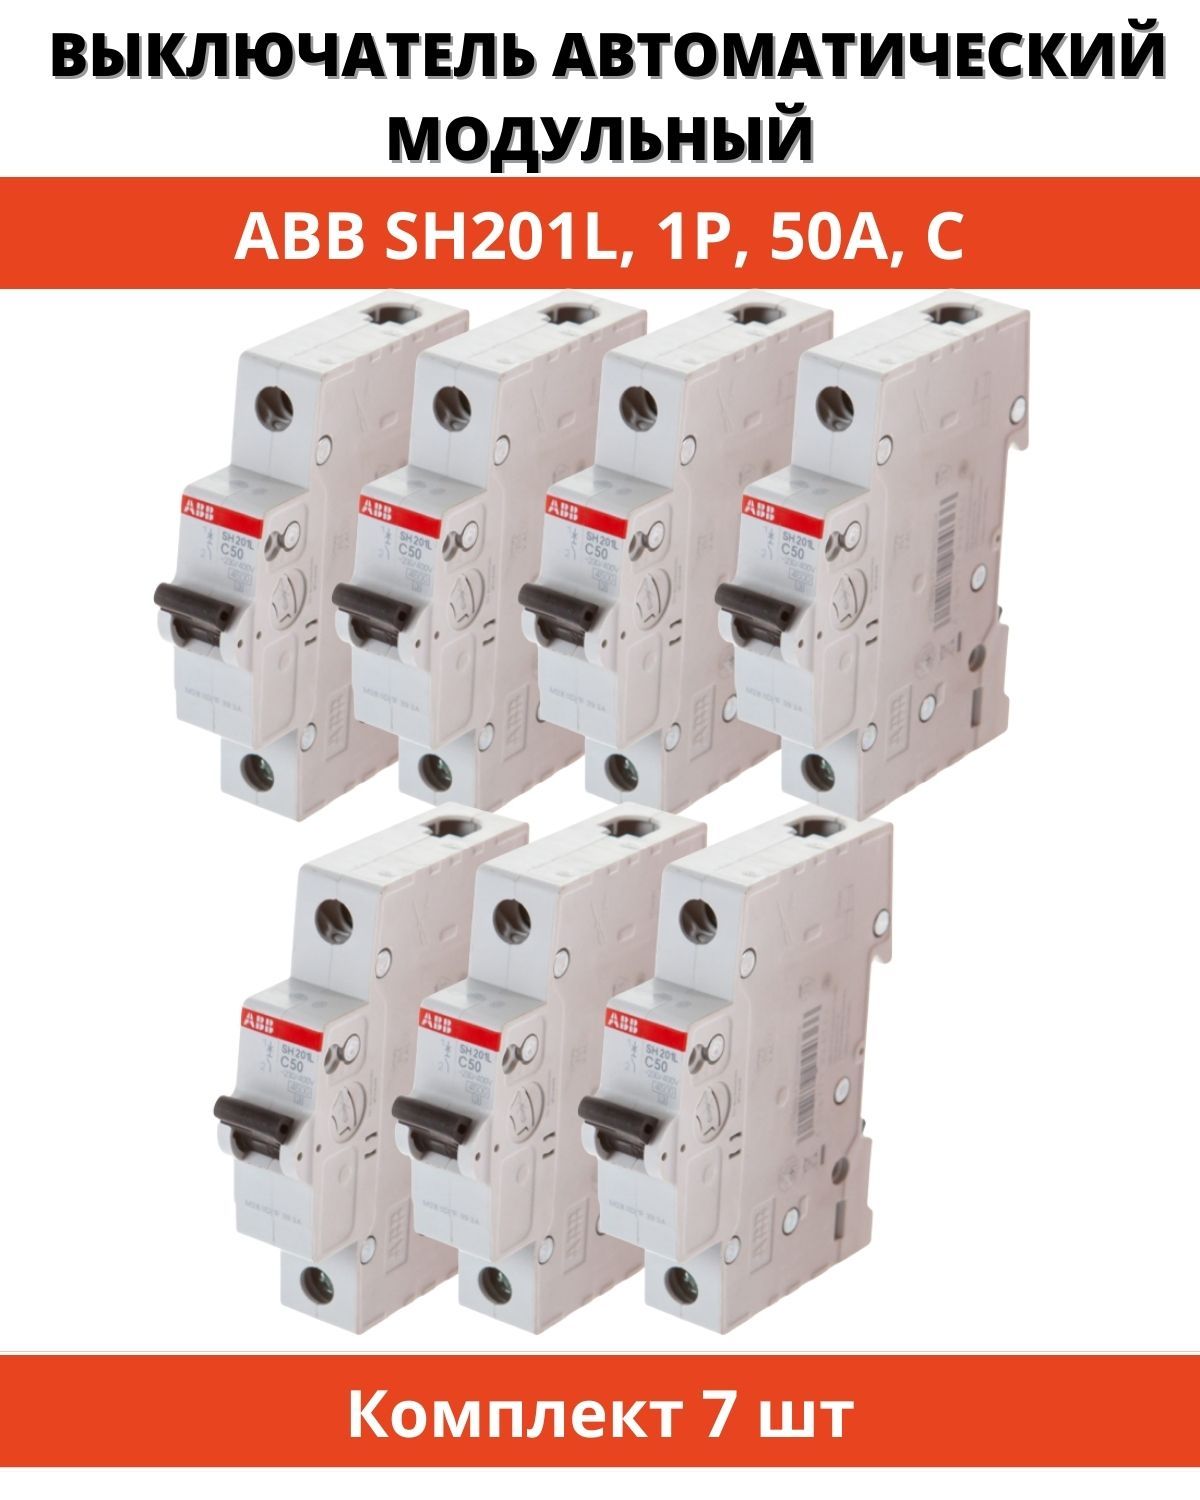 Автоматический выключатель abb 1. Автоматический выключатель ABB sh201l. АВВ sh201l c10. Автоматический выключатель ABB sh201l c10. Автомат ABB ms116.